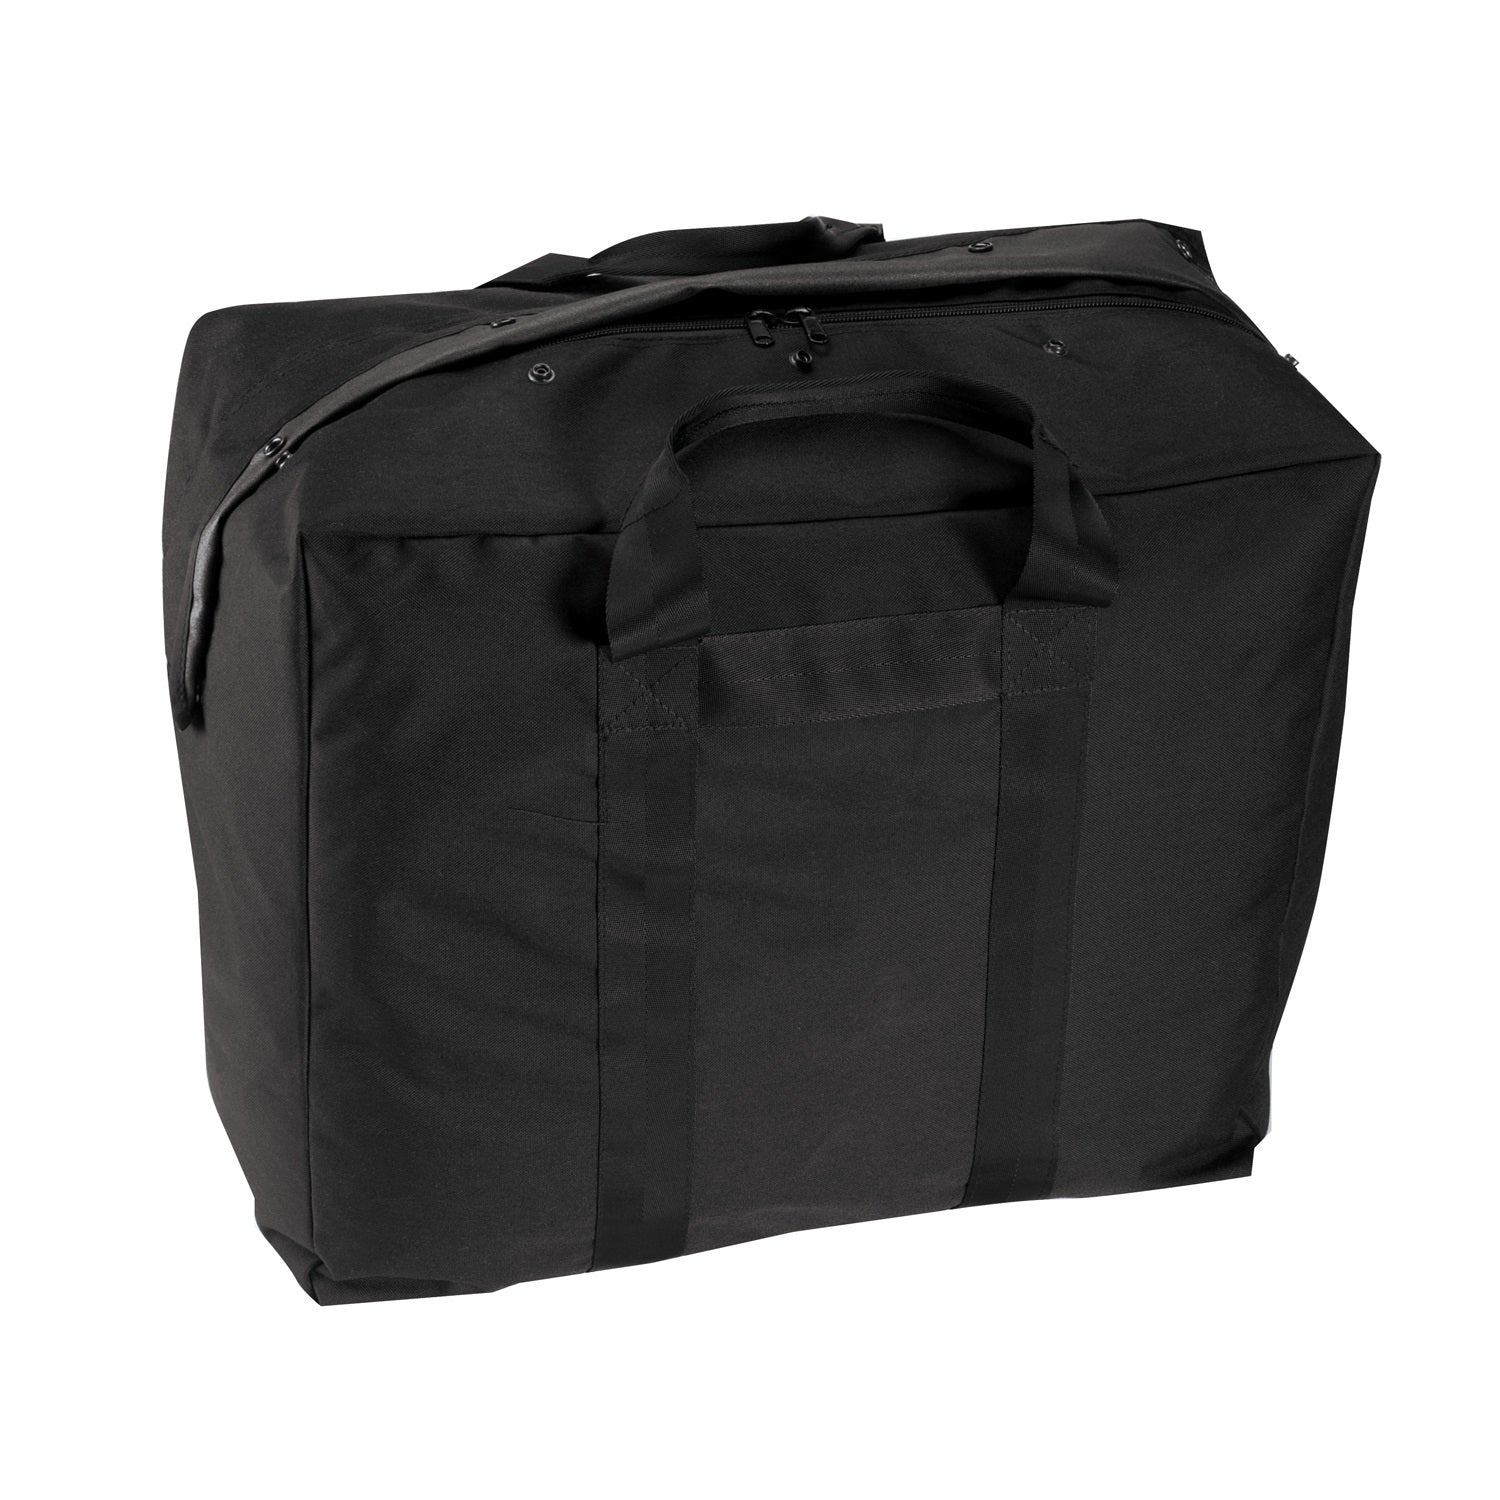 Rothco Enhanced Aviator Kit Bag Black